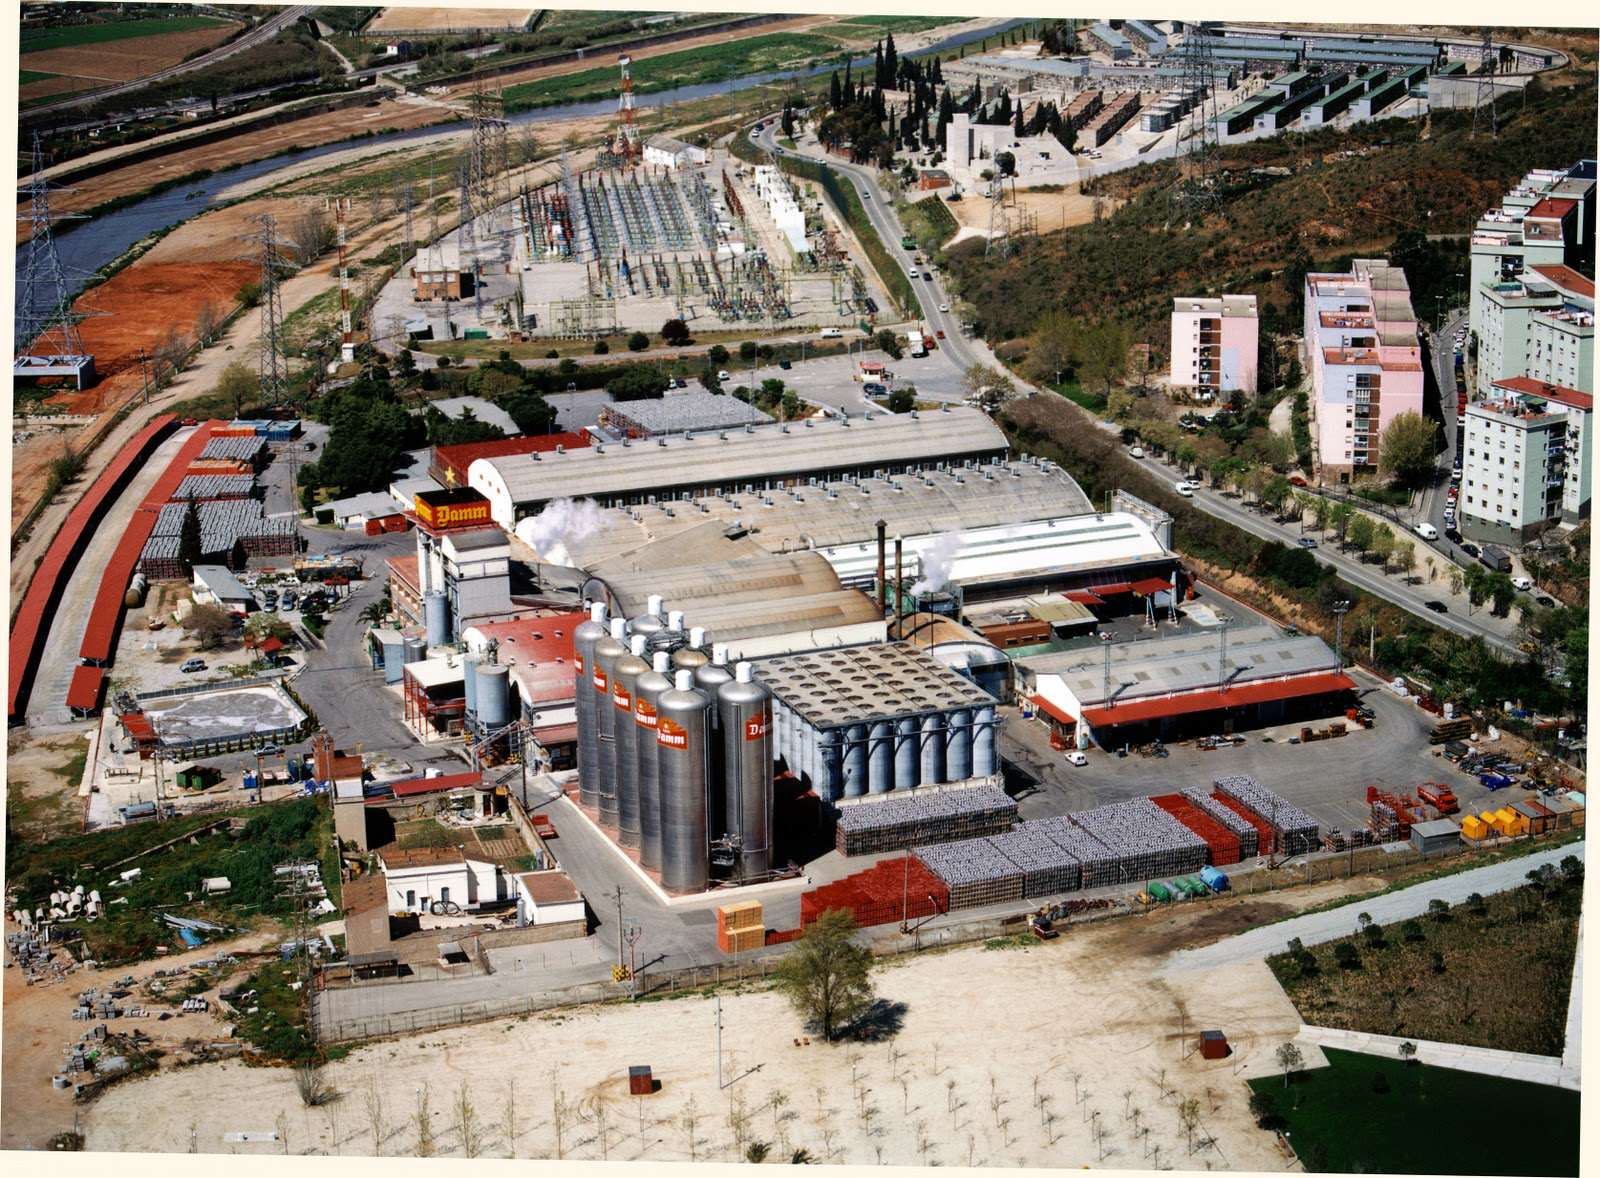 Vista aèrea de la planta de Damm al Prat de Llobregat